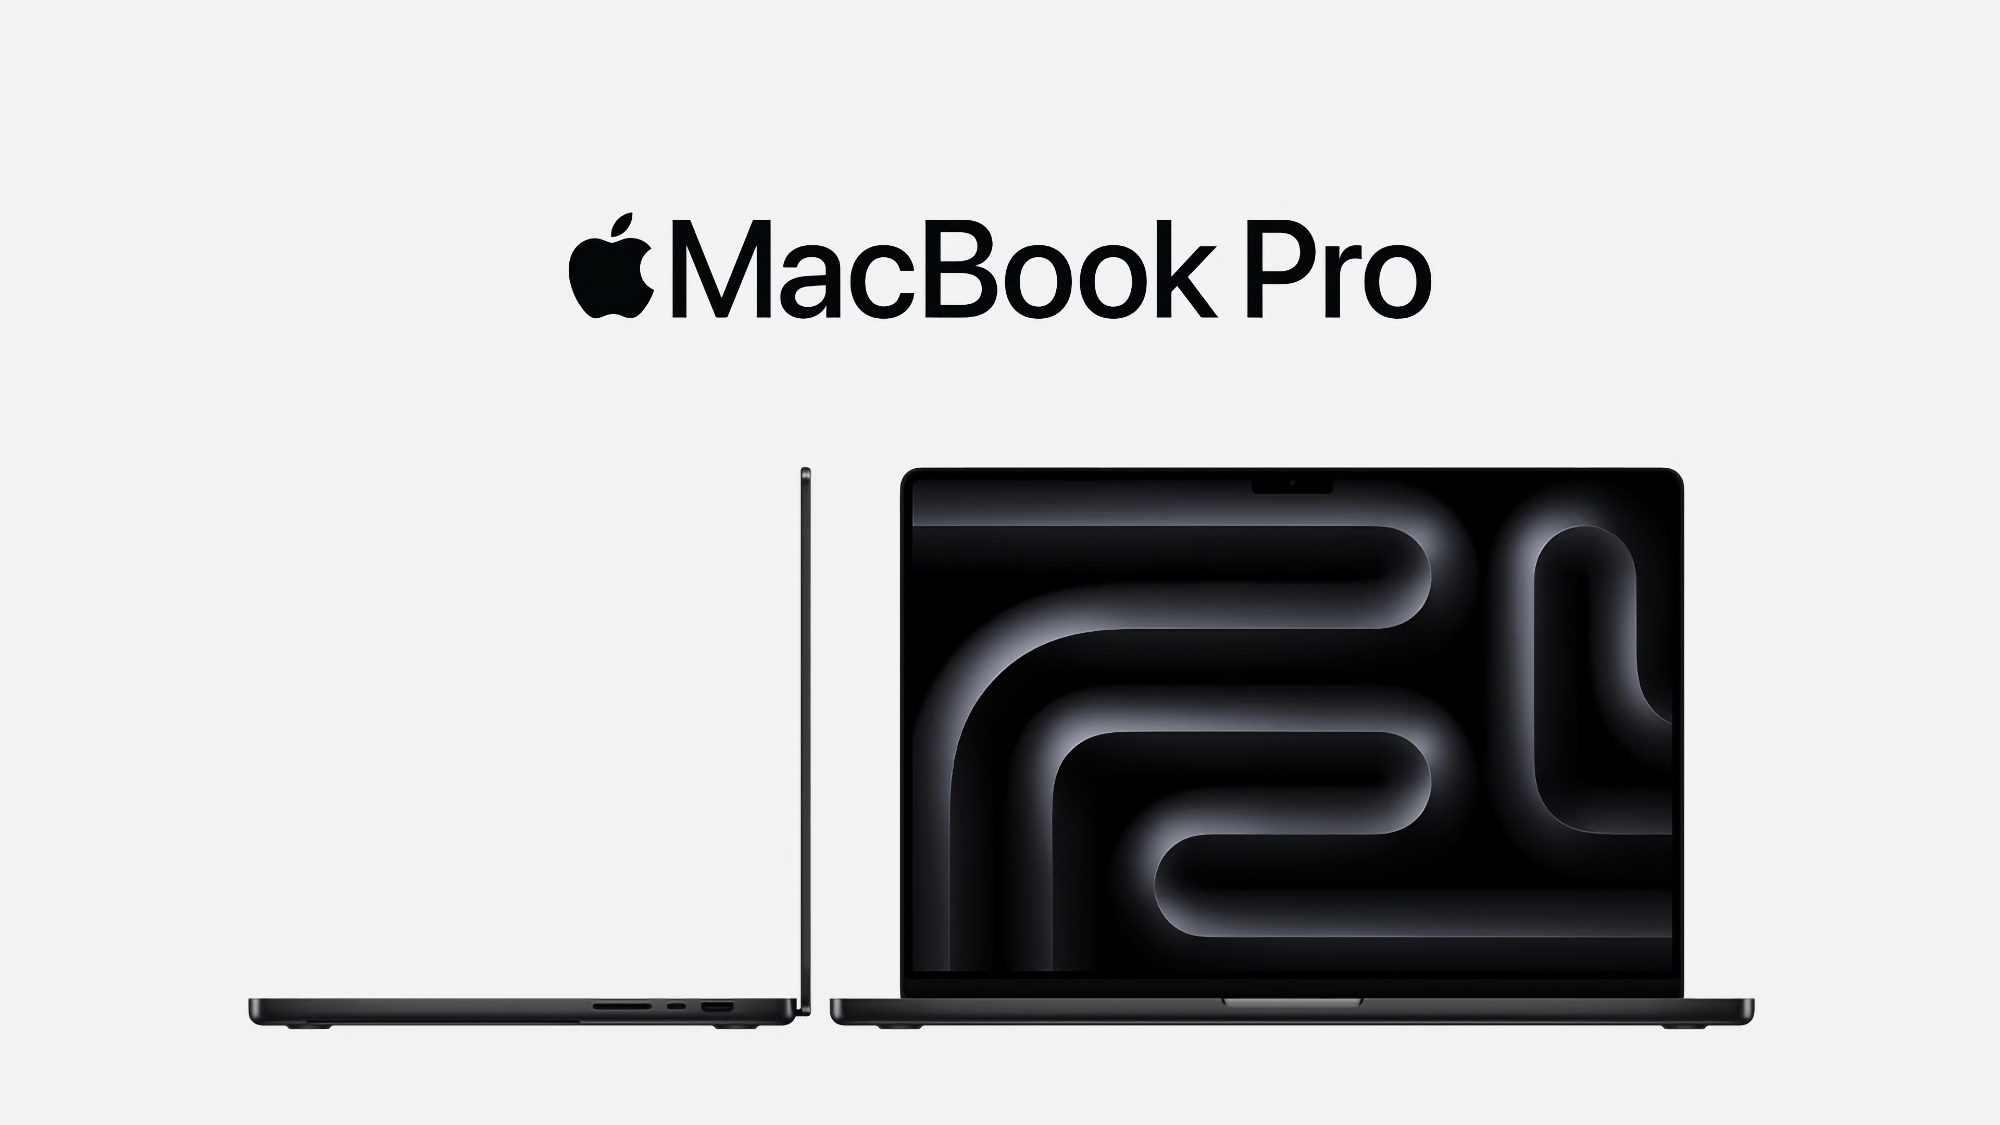 MacBook Pro mit M3 Chip erhält Multi-Display-Unterstützung mit Software-Update